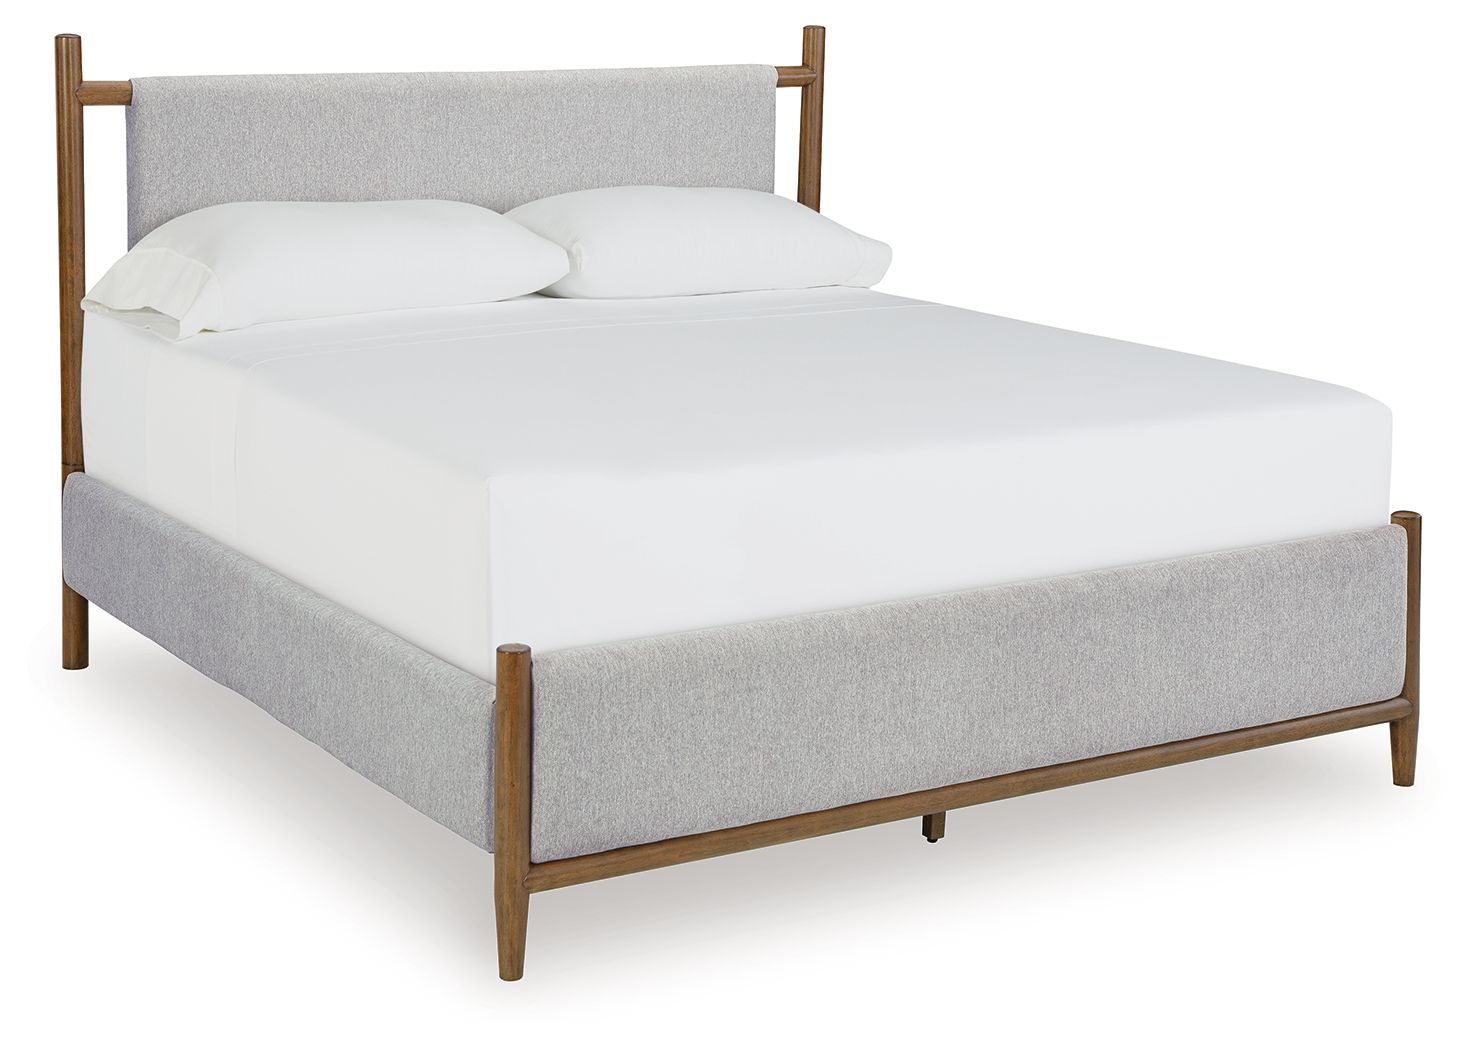 Lyncott - Upholstered Bed